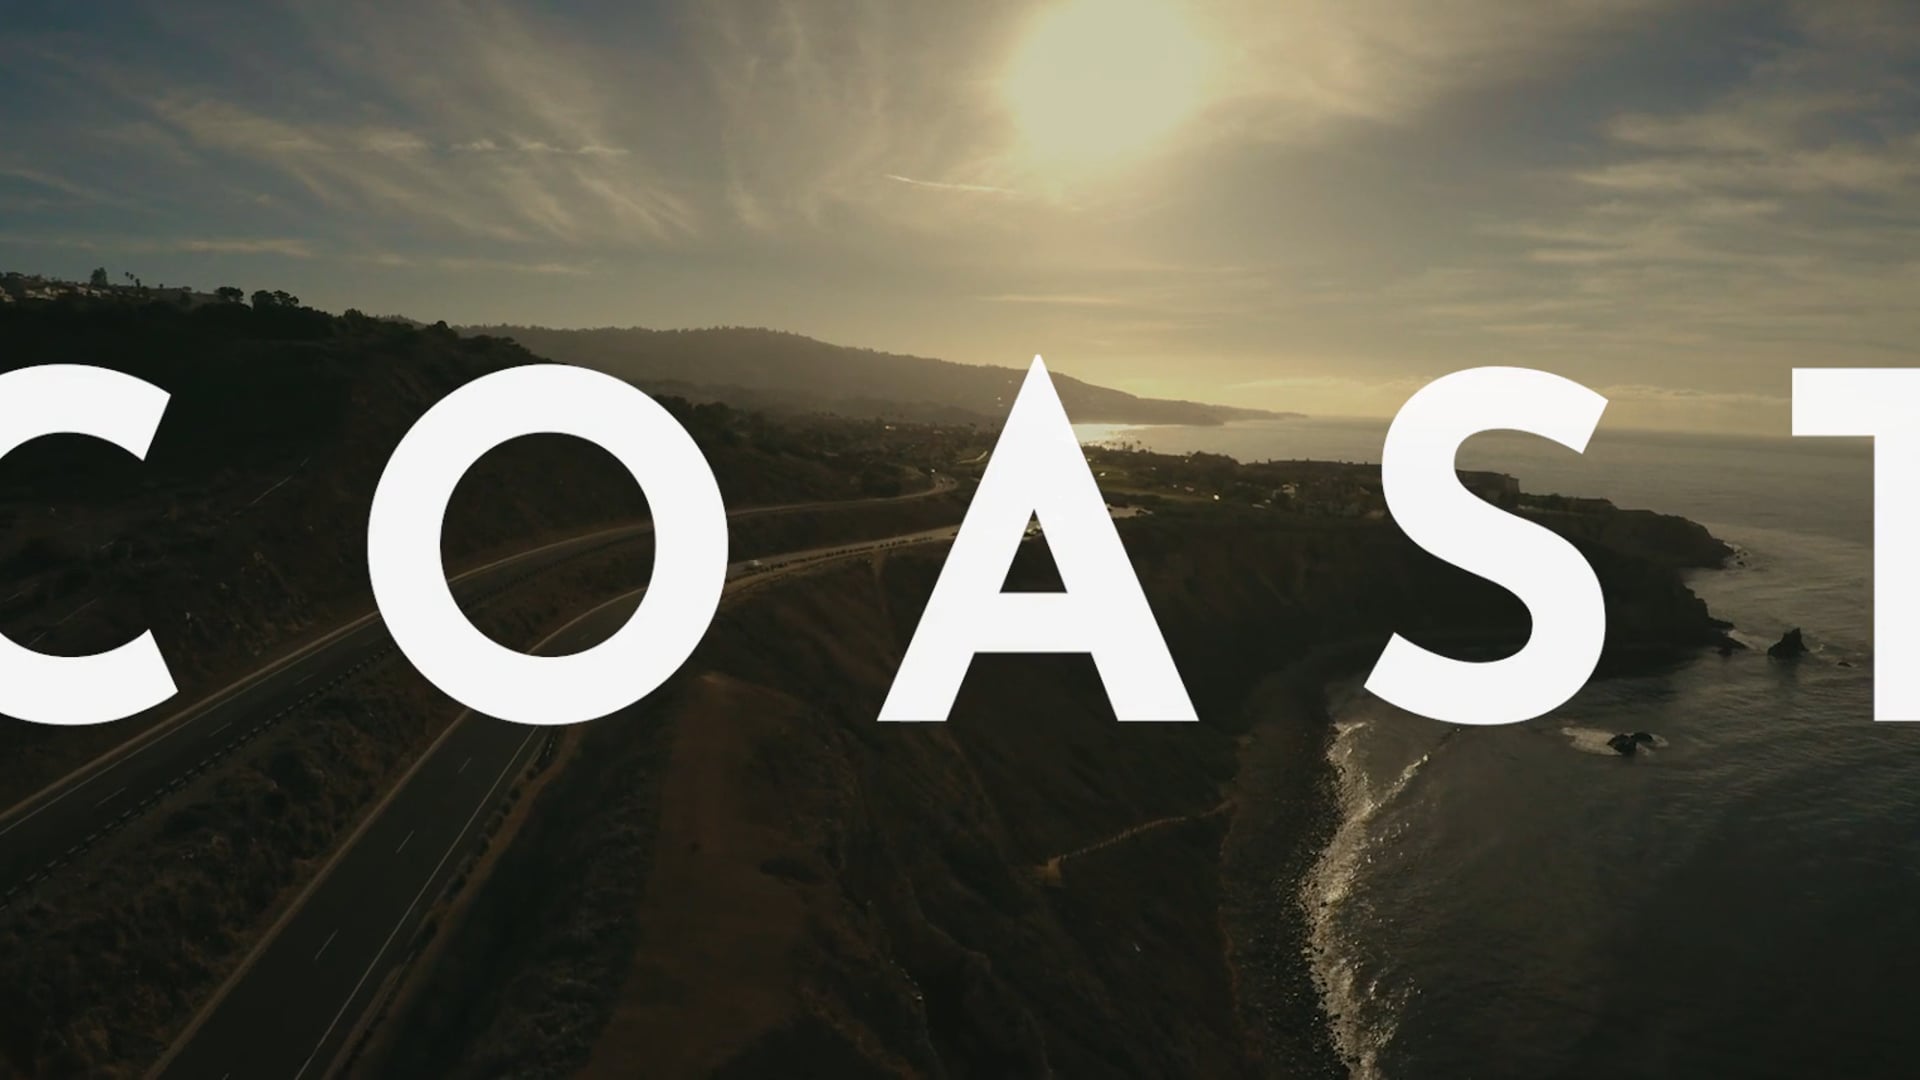 Coast - Teaser Trailer